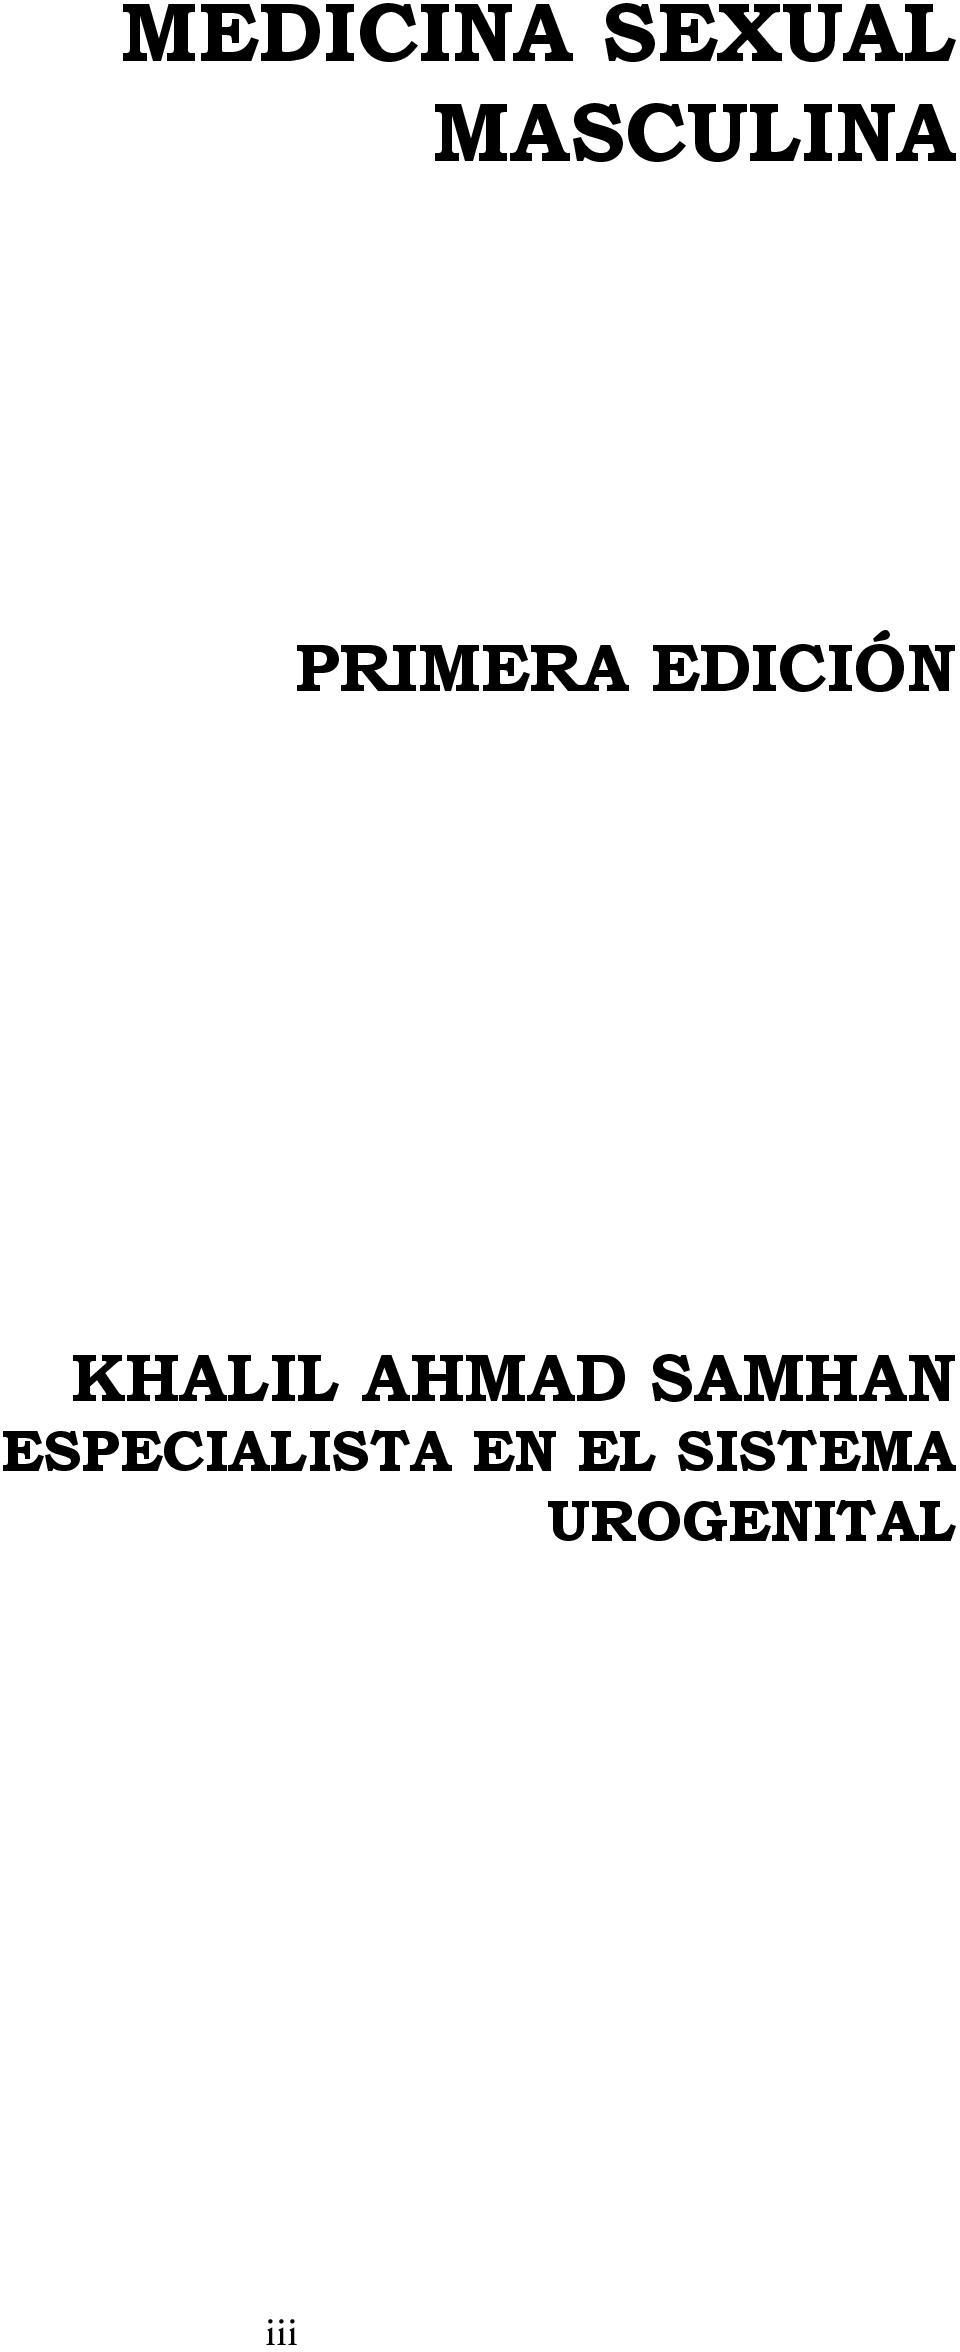 AHMAD SAMHAN ESPECIALISTA